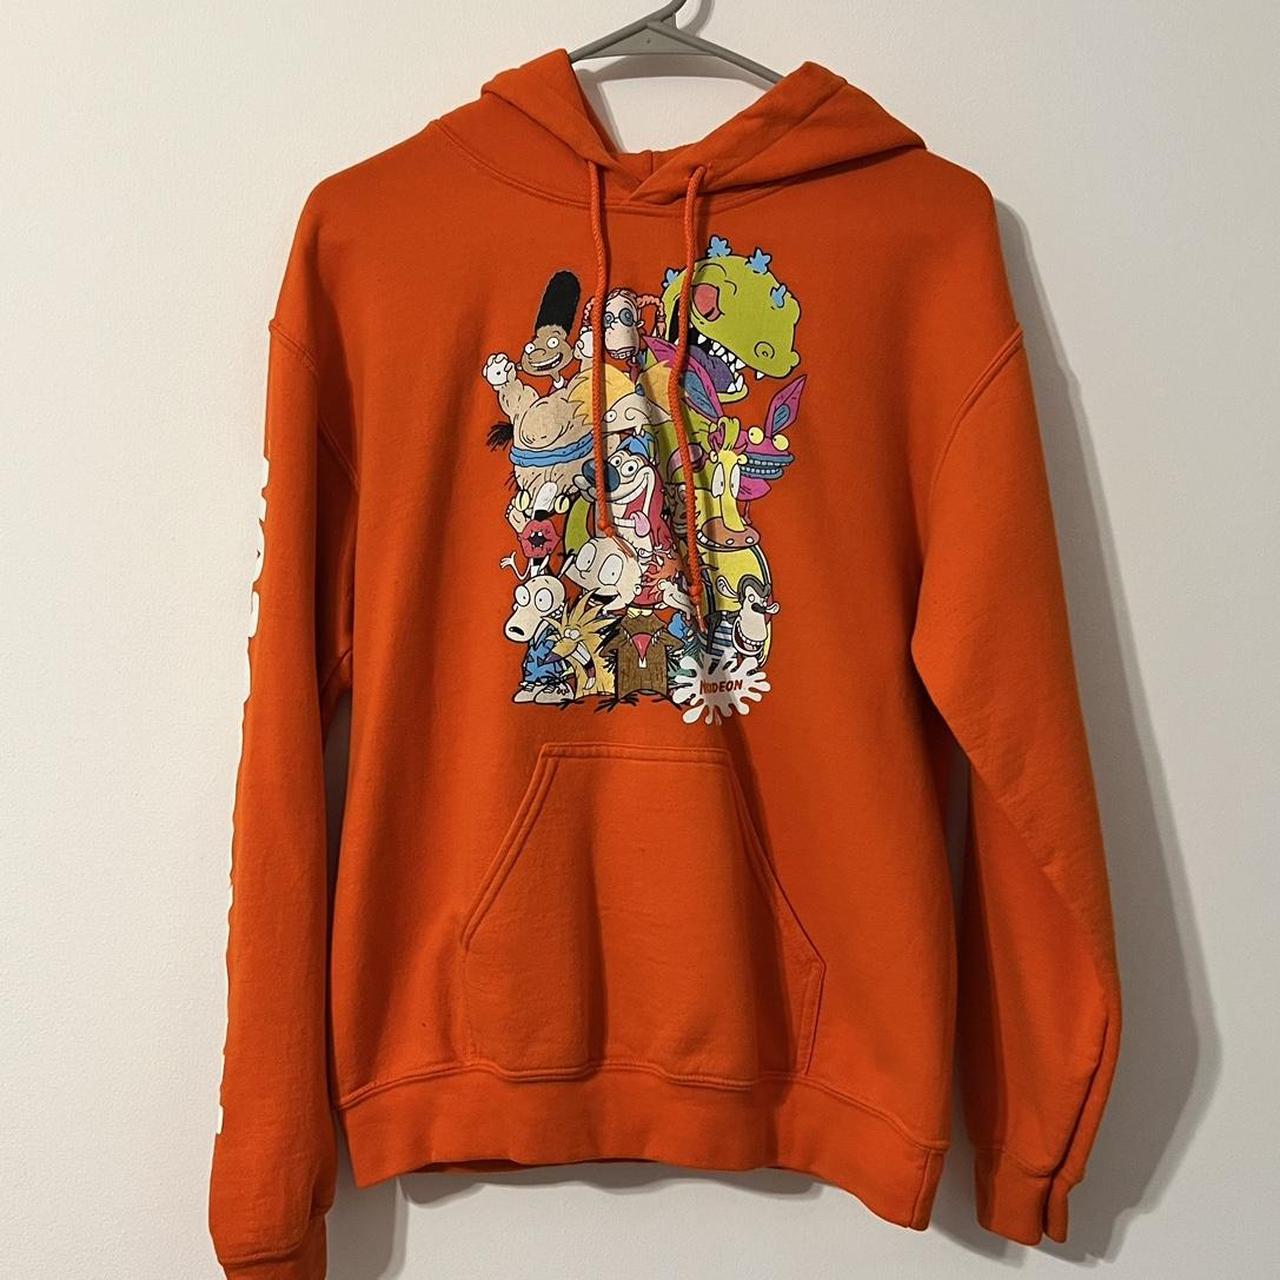 Nickelodeon Rugrats Sweatshirt - Depop